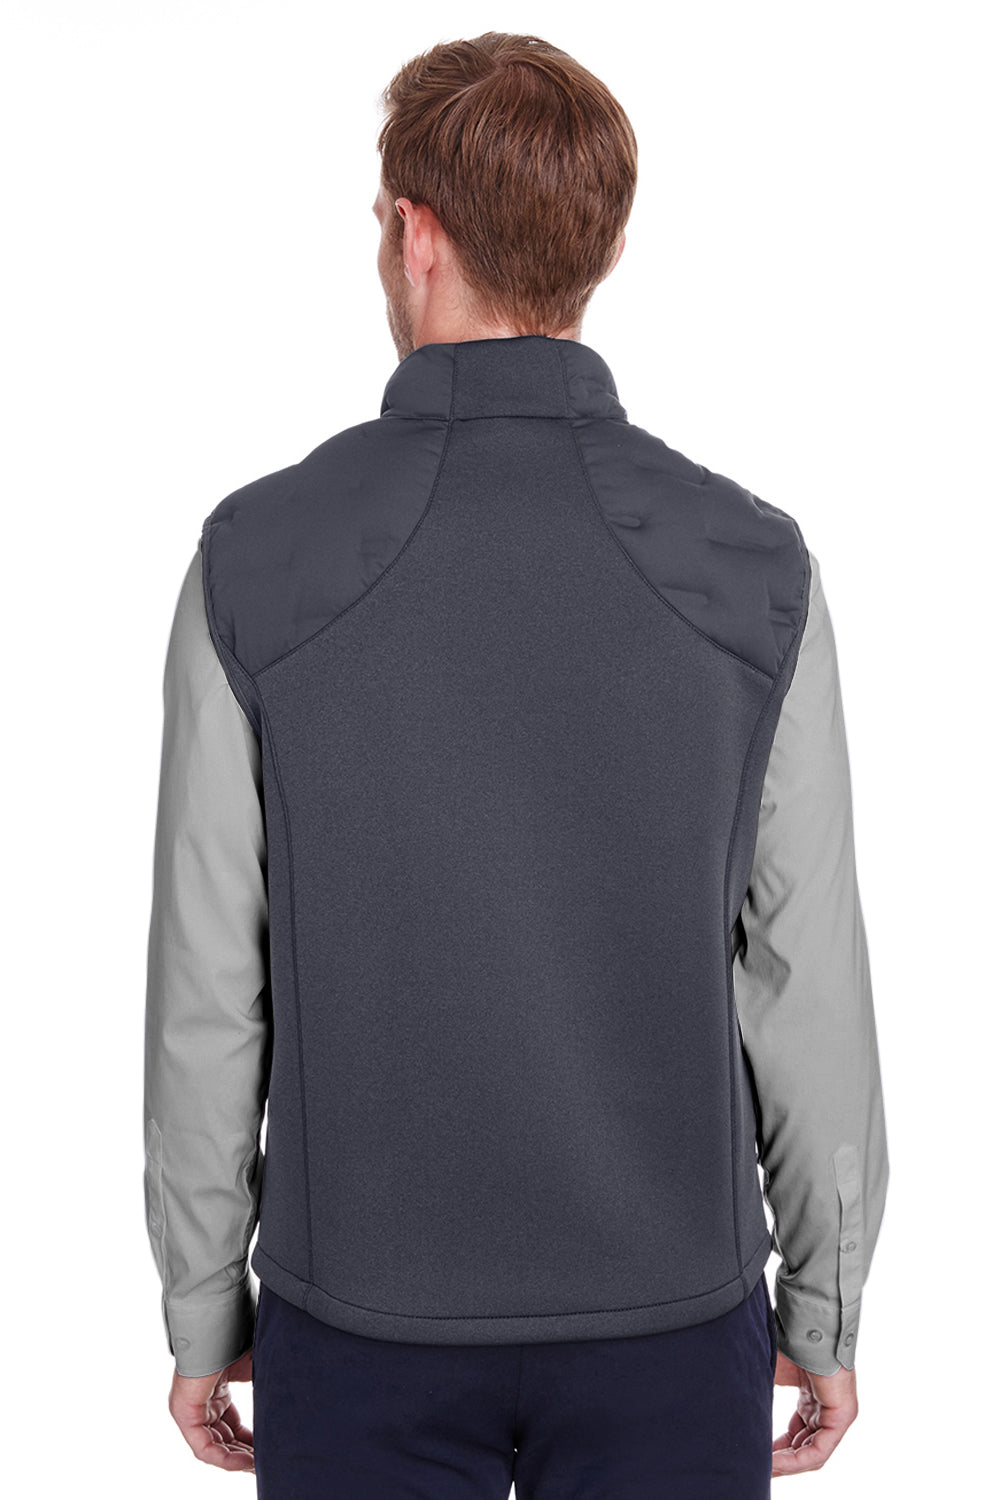 North End NE709 Mens Pioneer Hybrid Waterproof Full Zip Vest Carbon Grey/Black Back